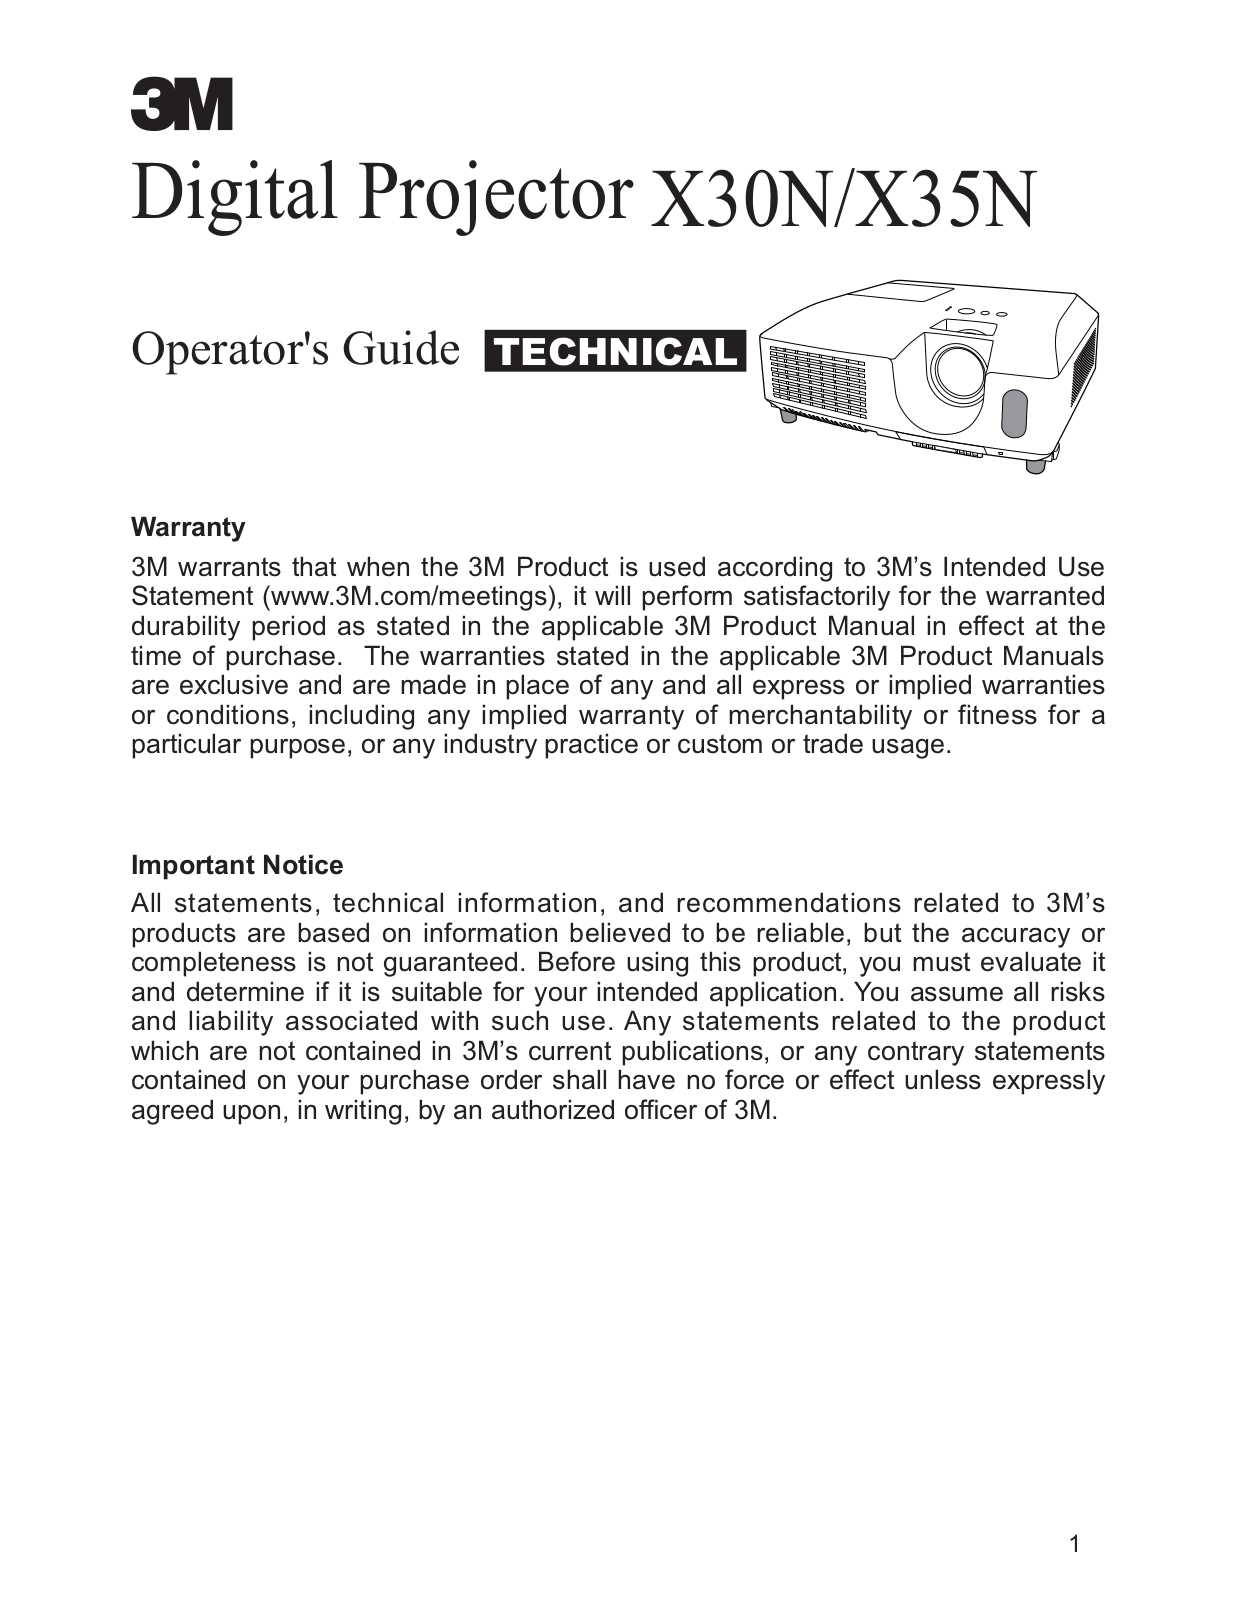 3M Digital Projector X30N, Digital Projector X35N Operator Guide